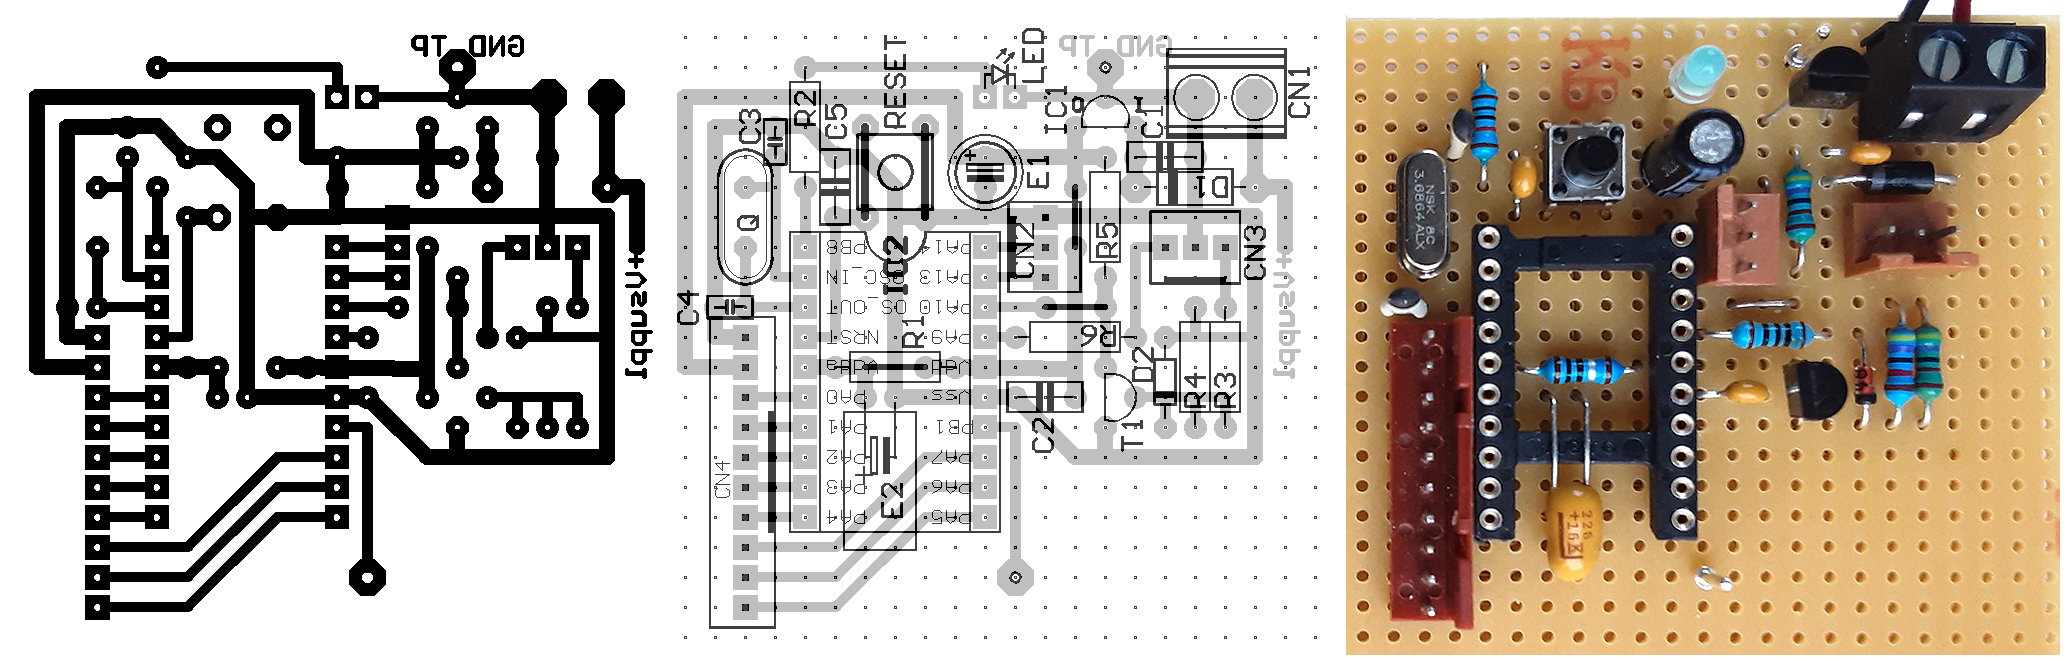 F042 TSSOP20 PCB layout